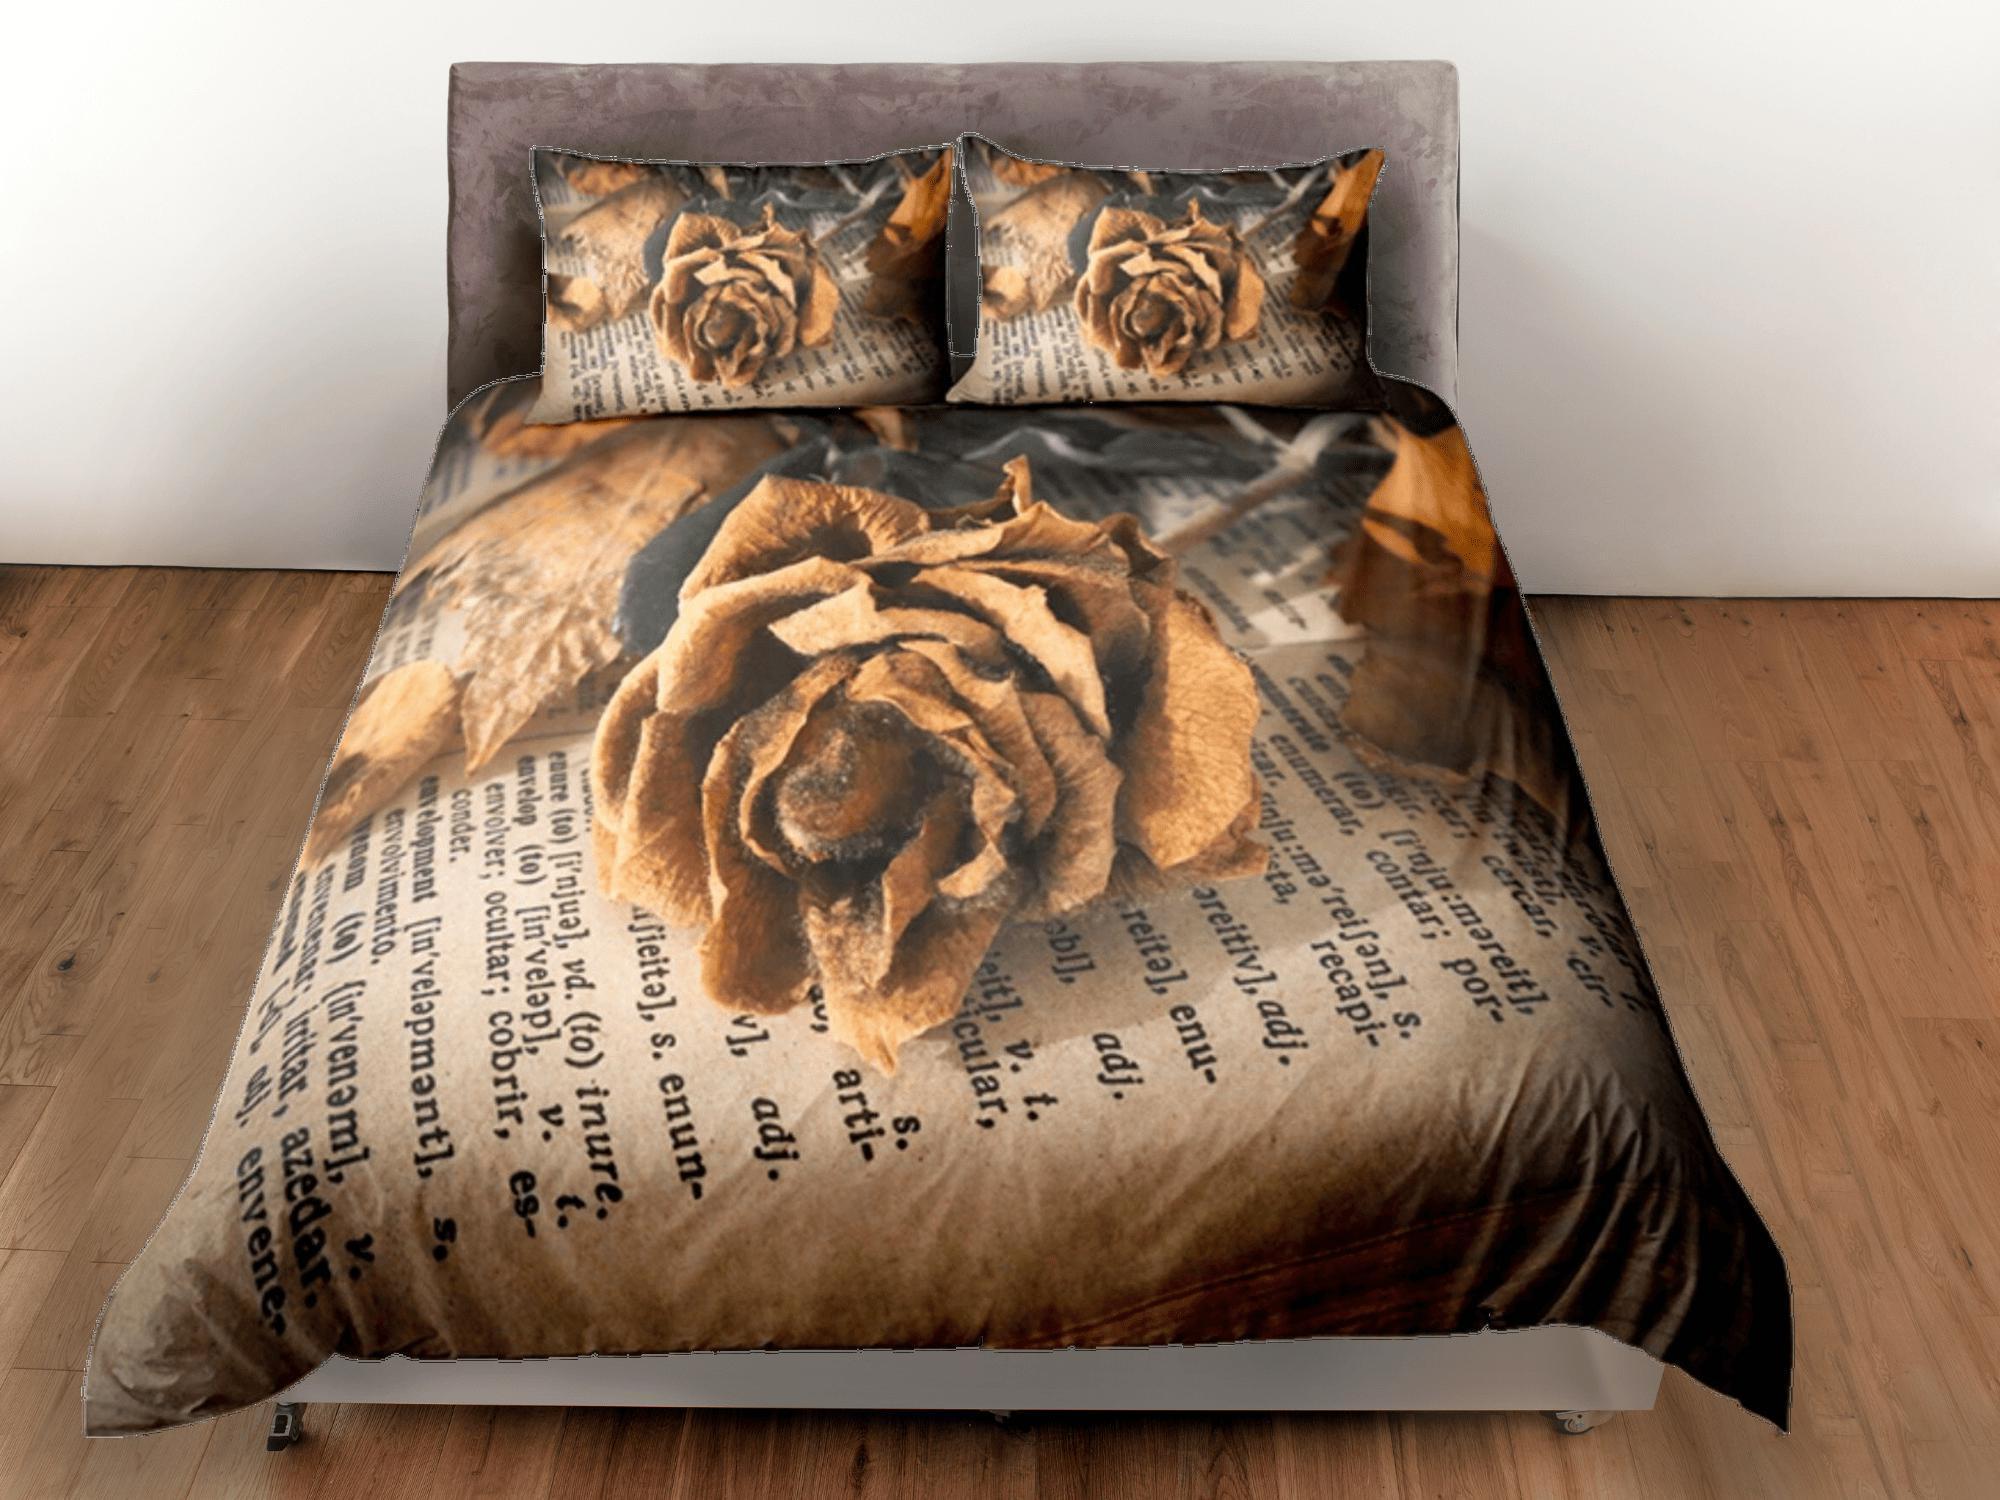 daintyduvet Vintage Paper Roses Duvet Cover Set Bedspread, Floral Dorm Bedding Pillowcase